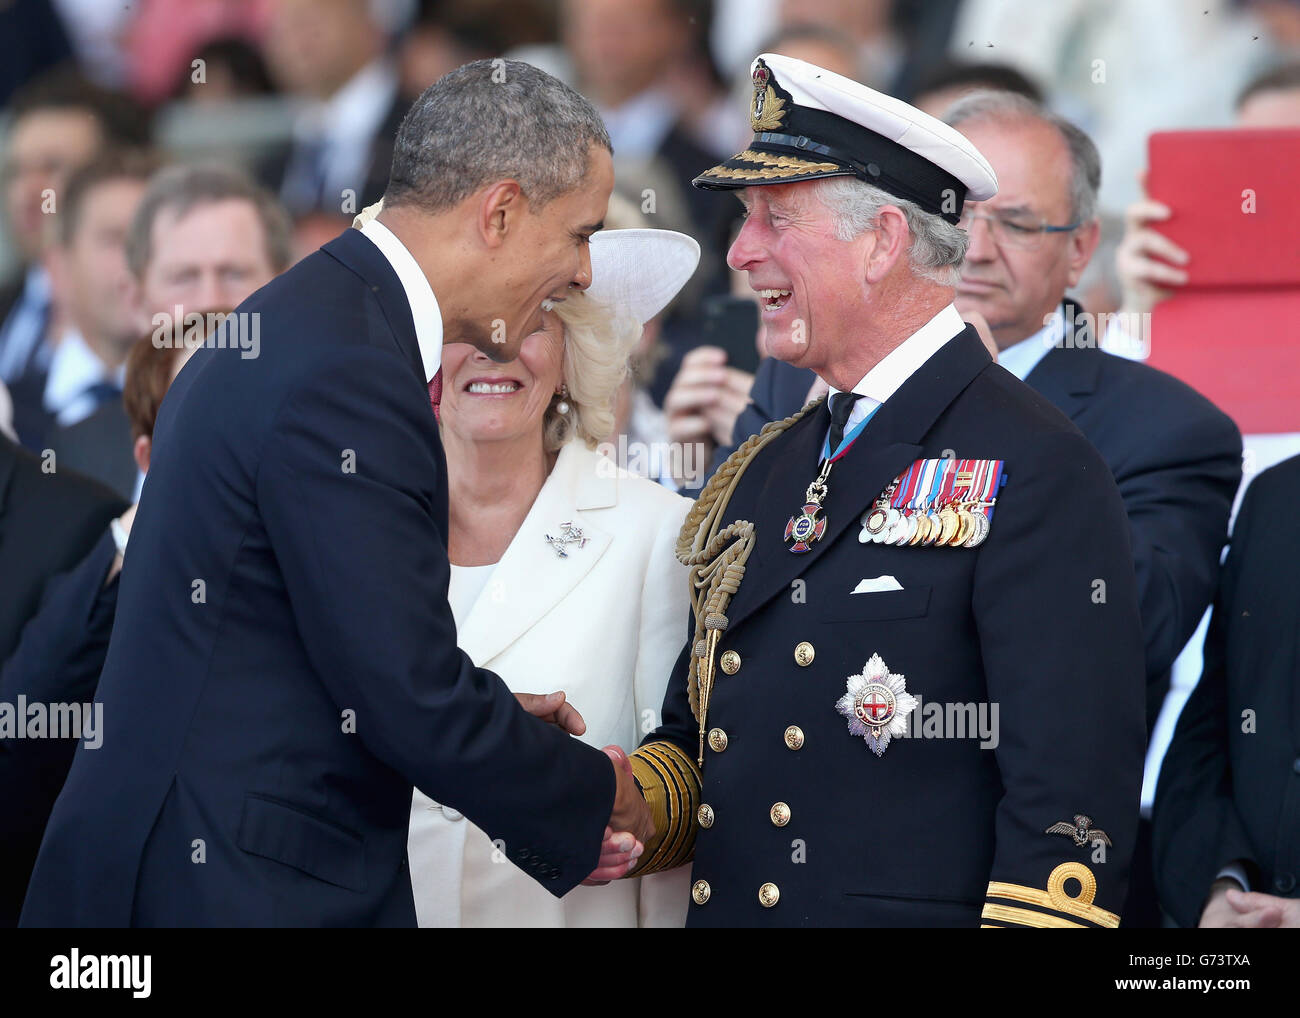 LE président AMÉRICAIN Barak Obama rencontre le prince de Galles lors d'une cérémonie internationale avec les chefs d'État à Sword Beach en Normandie pour marquer le 70e anniversaire du débarquement. Banque D'Images